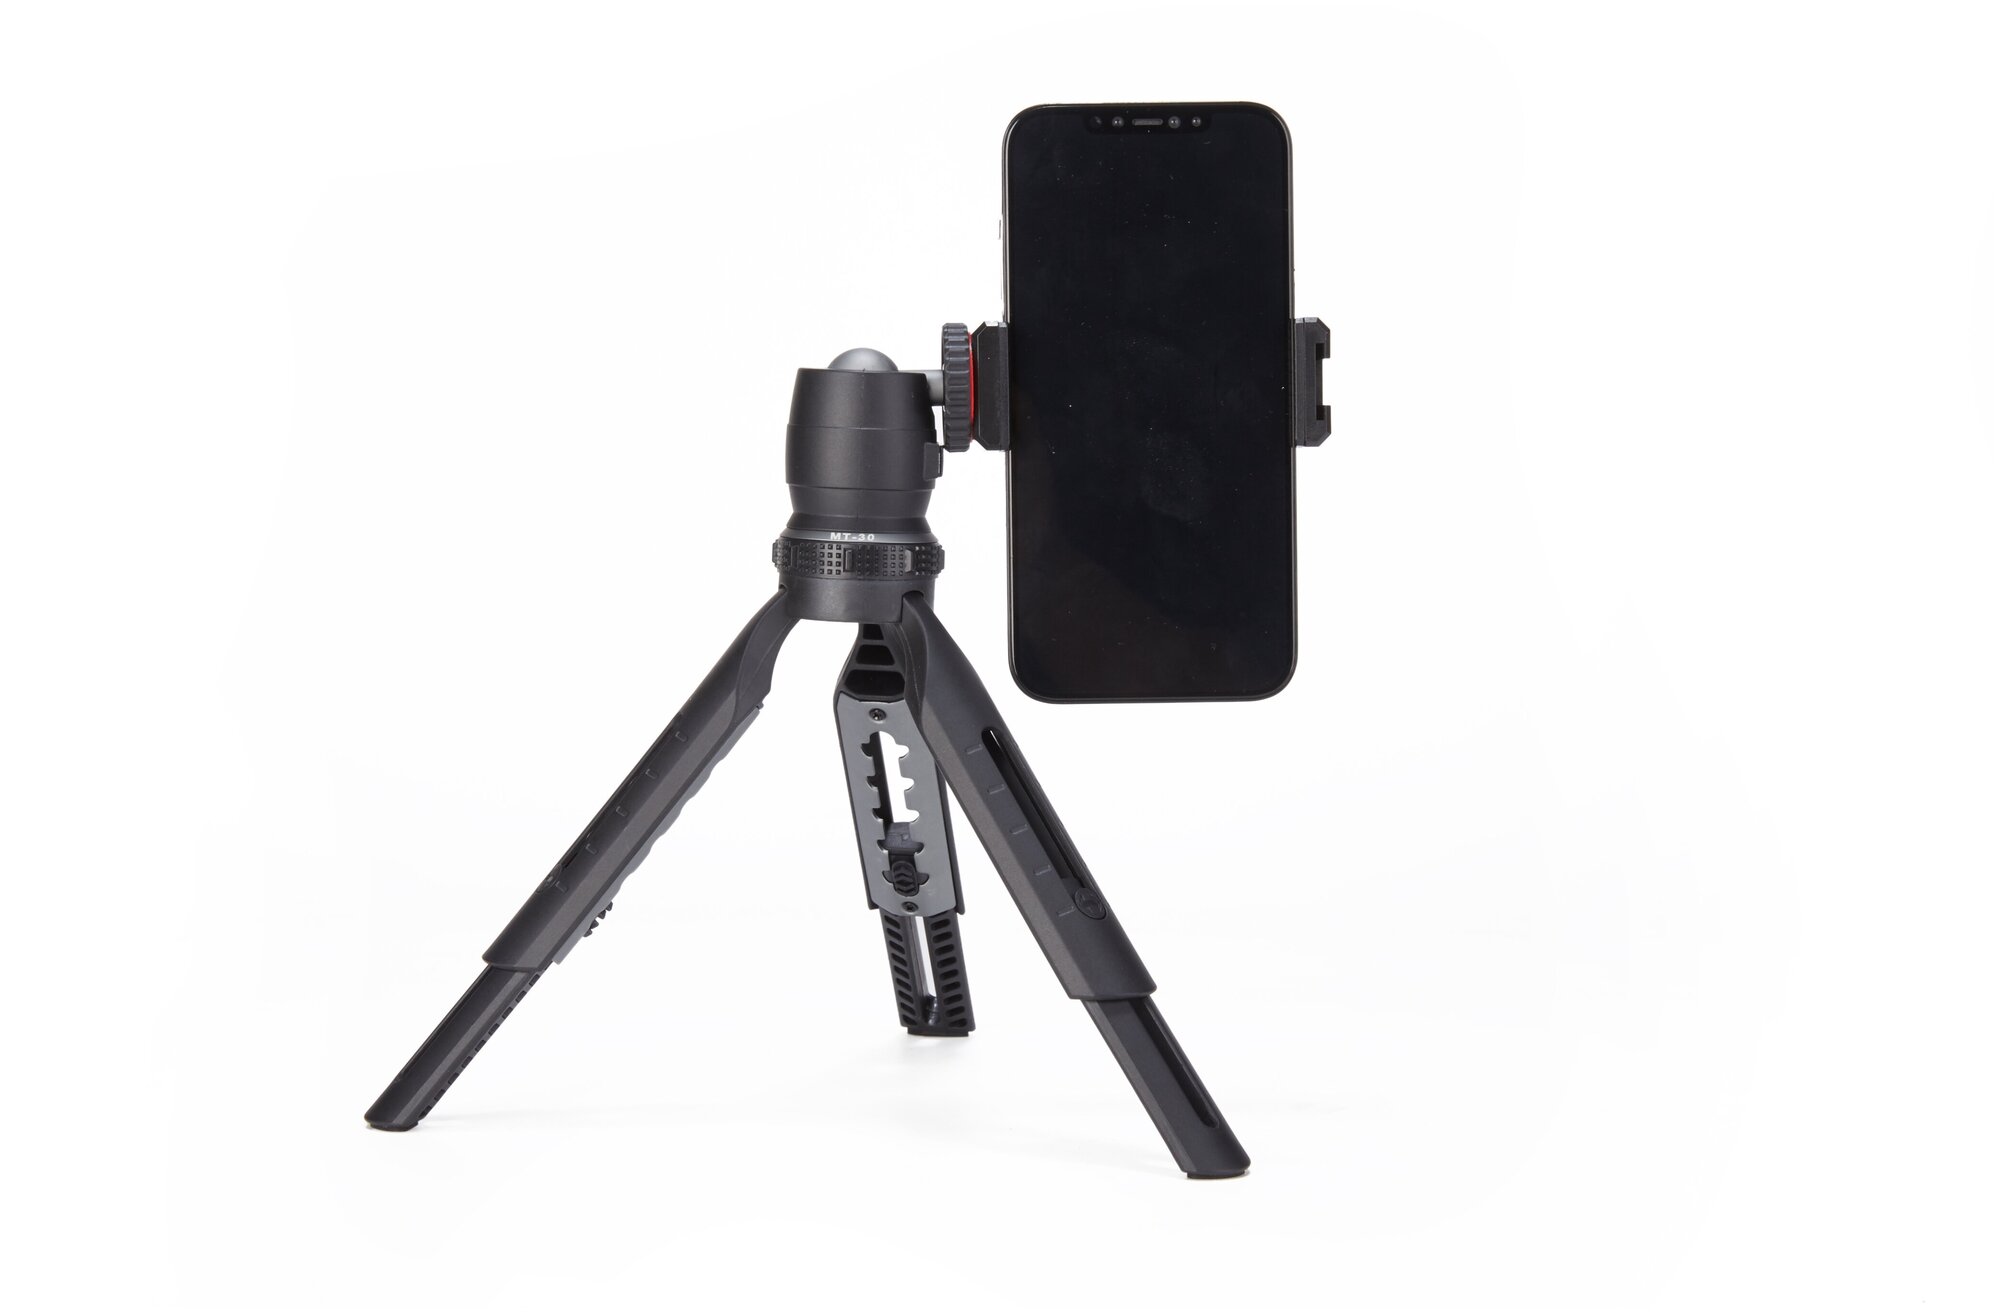 Трипод атив JMARY MT-30 настольный для фото/видеокамер/смартфон черный